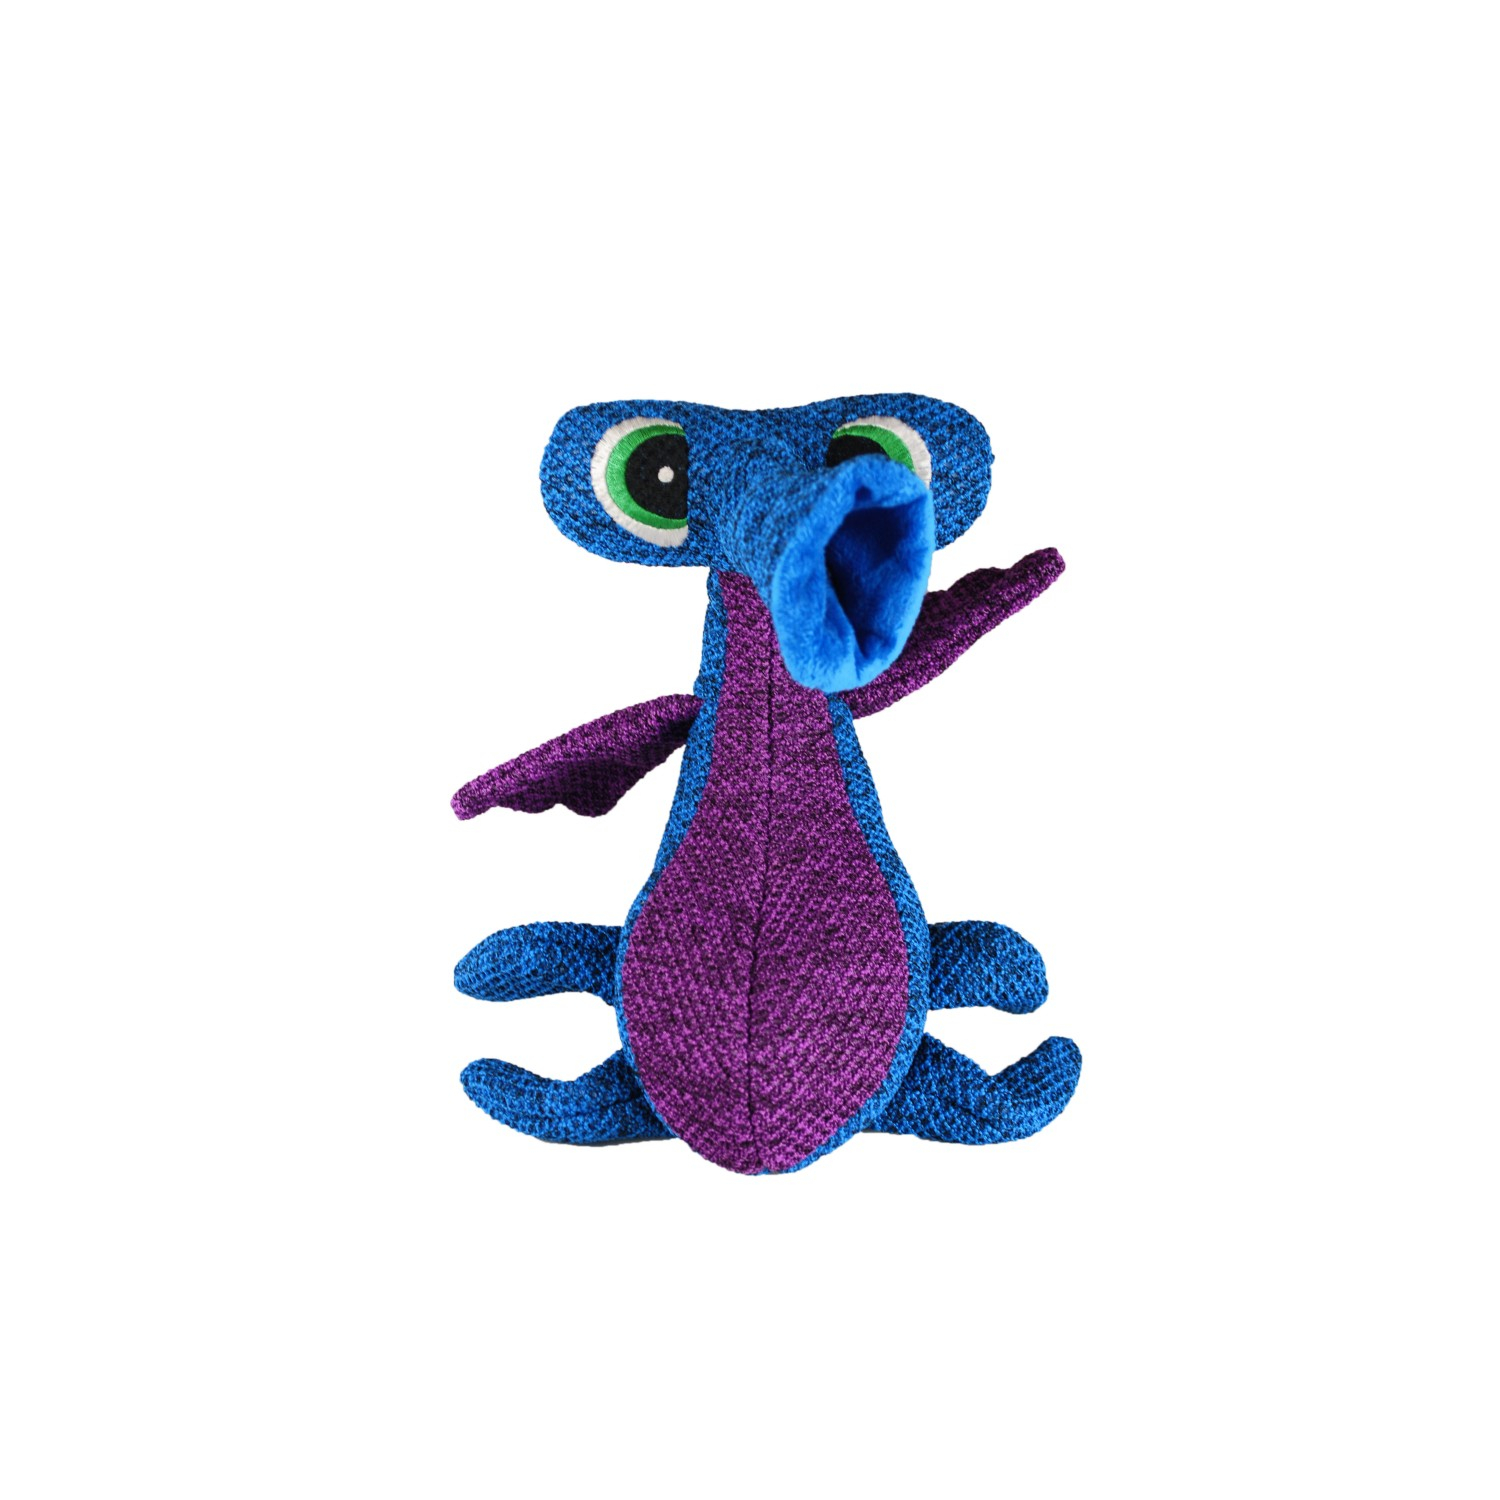 Woozles KONG - Brinquedo azul Tamanho M